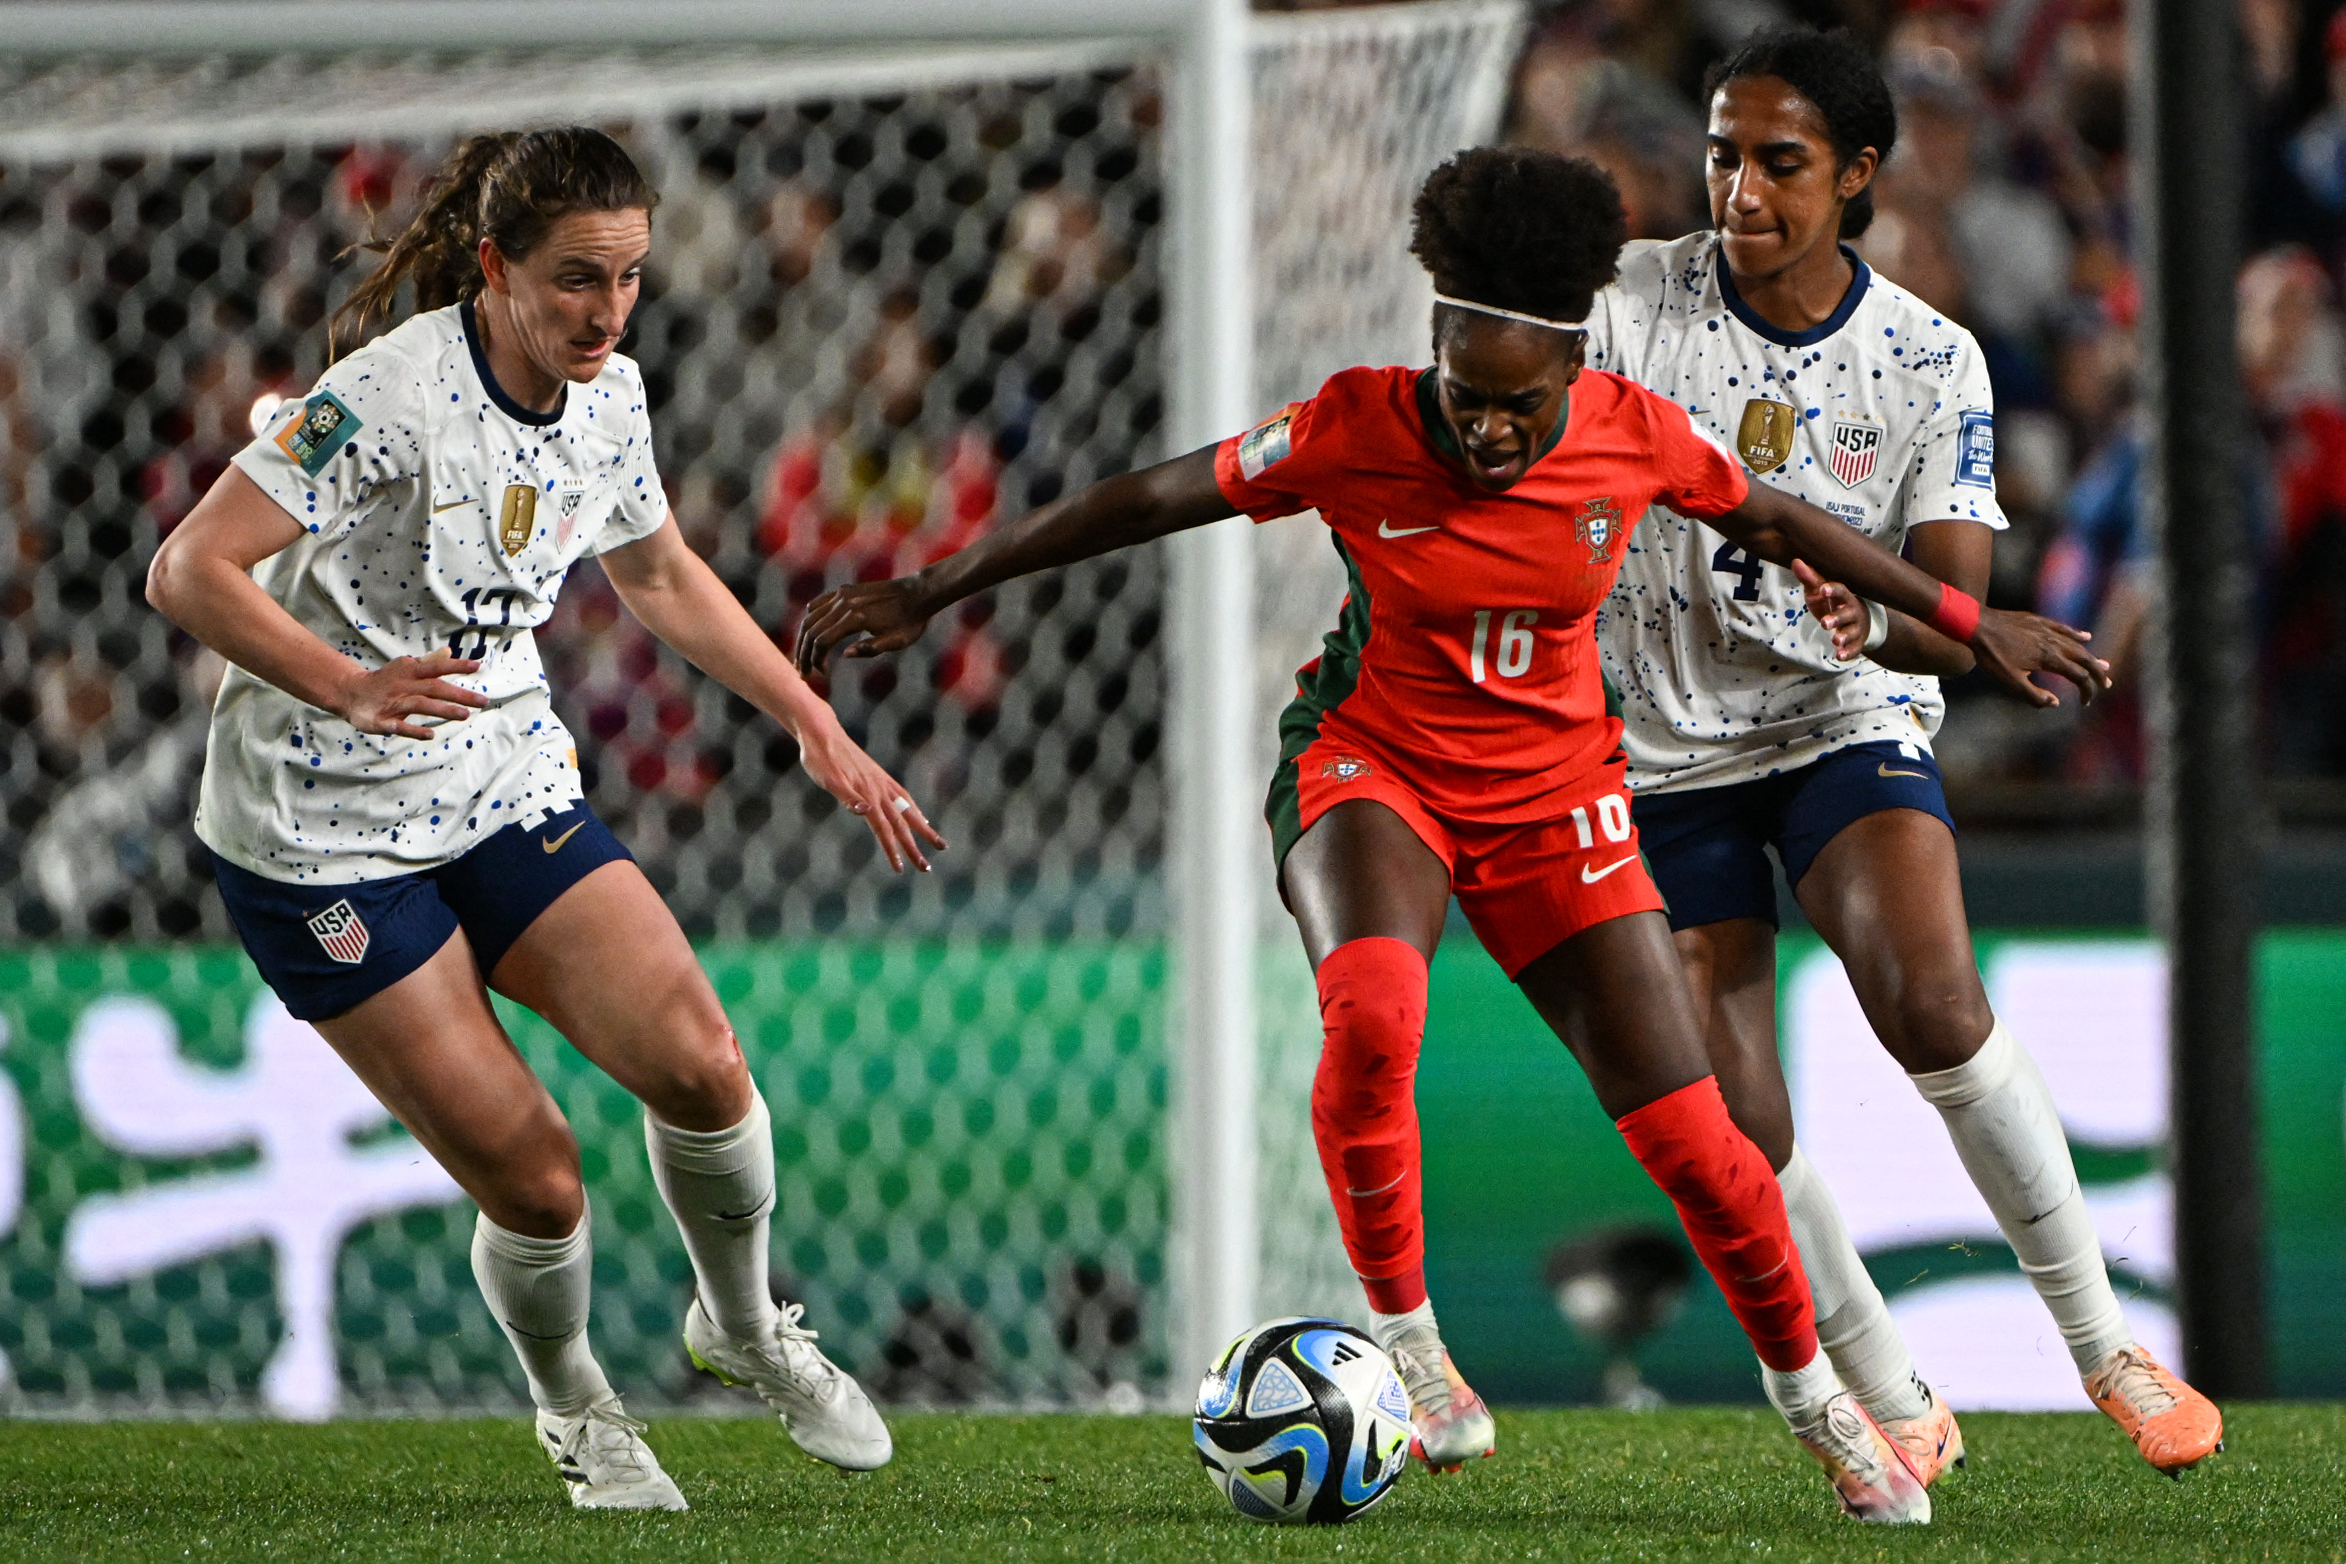 Acompanhe, AO MINUTO, o jogo decisivo entre Portugal e Estados Unidos -  Mundial Futebol Feminino - SAPO Desporto